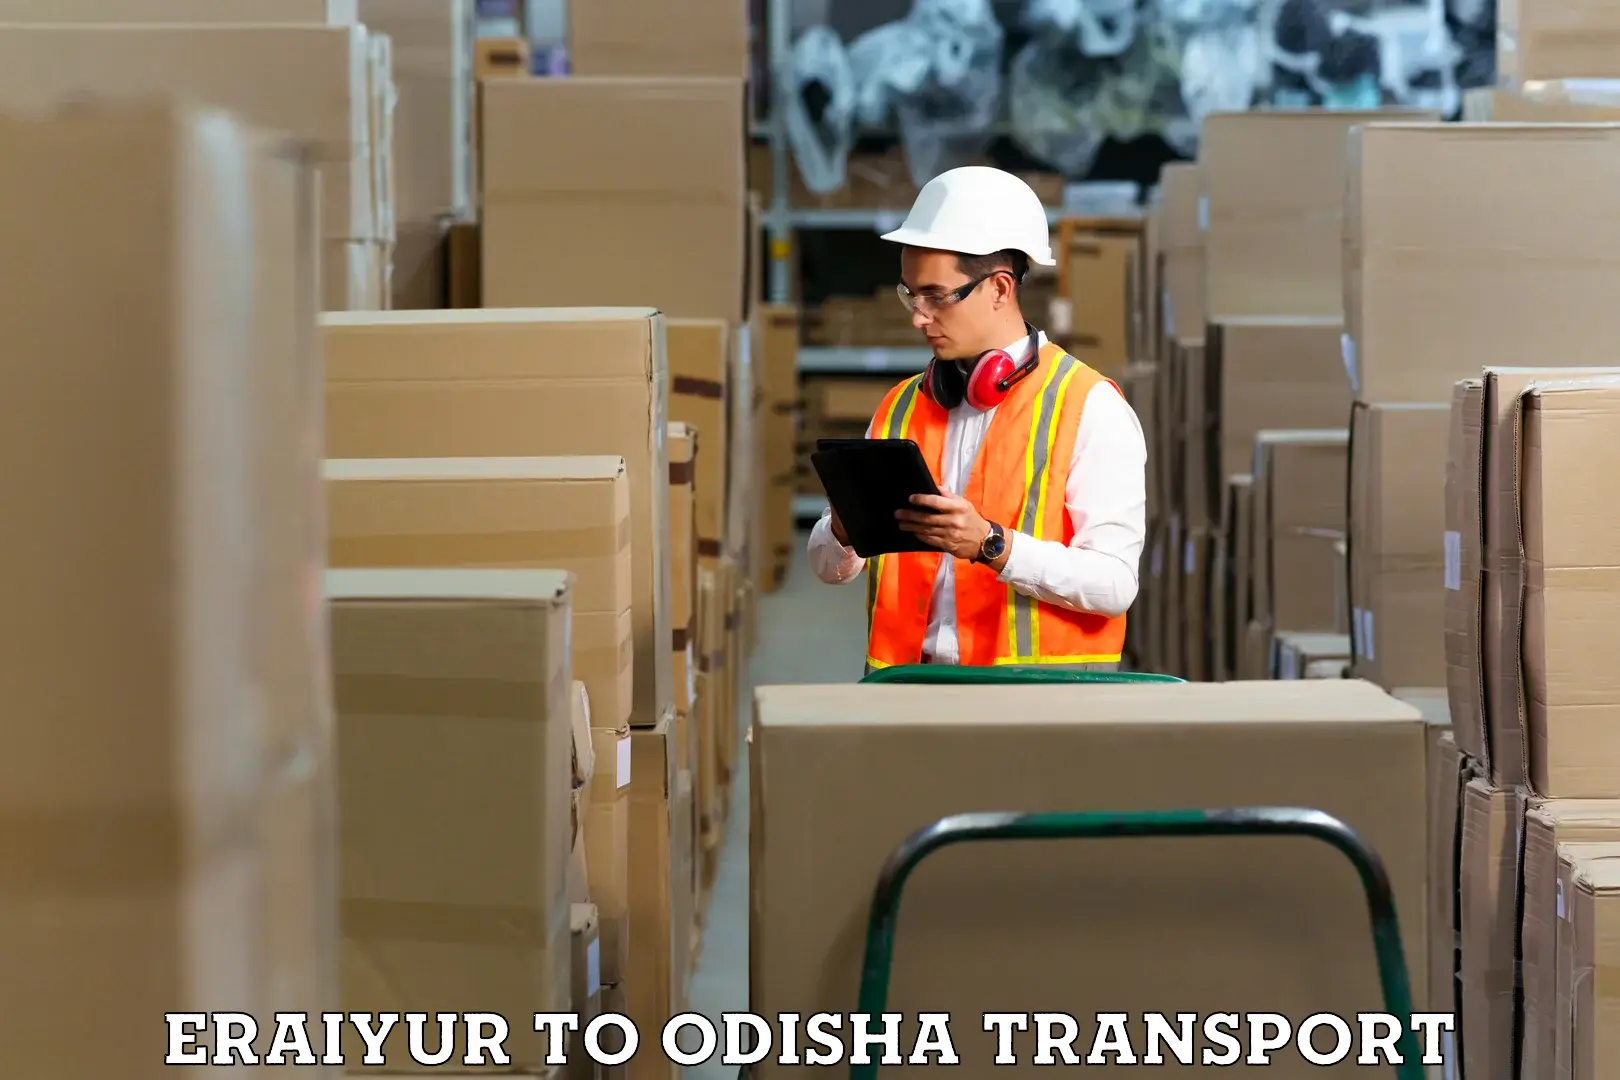 Container transport service Eraiyur to Dukura